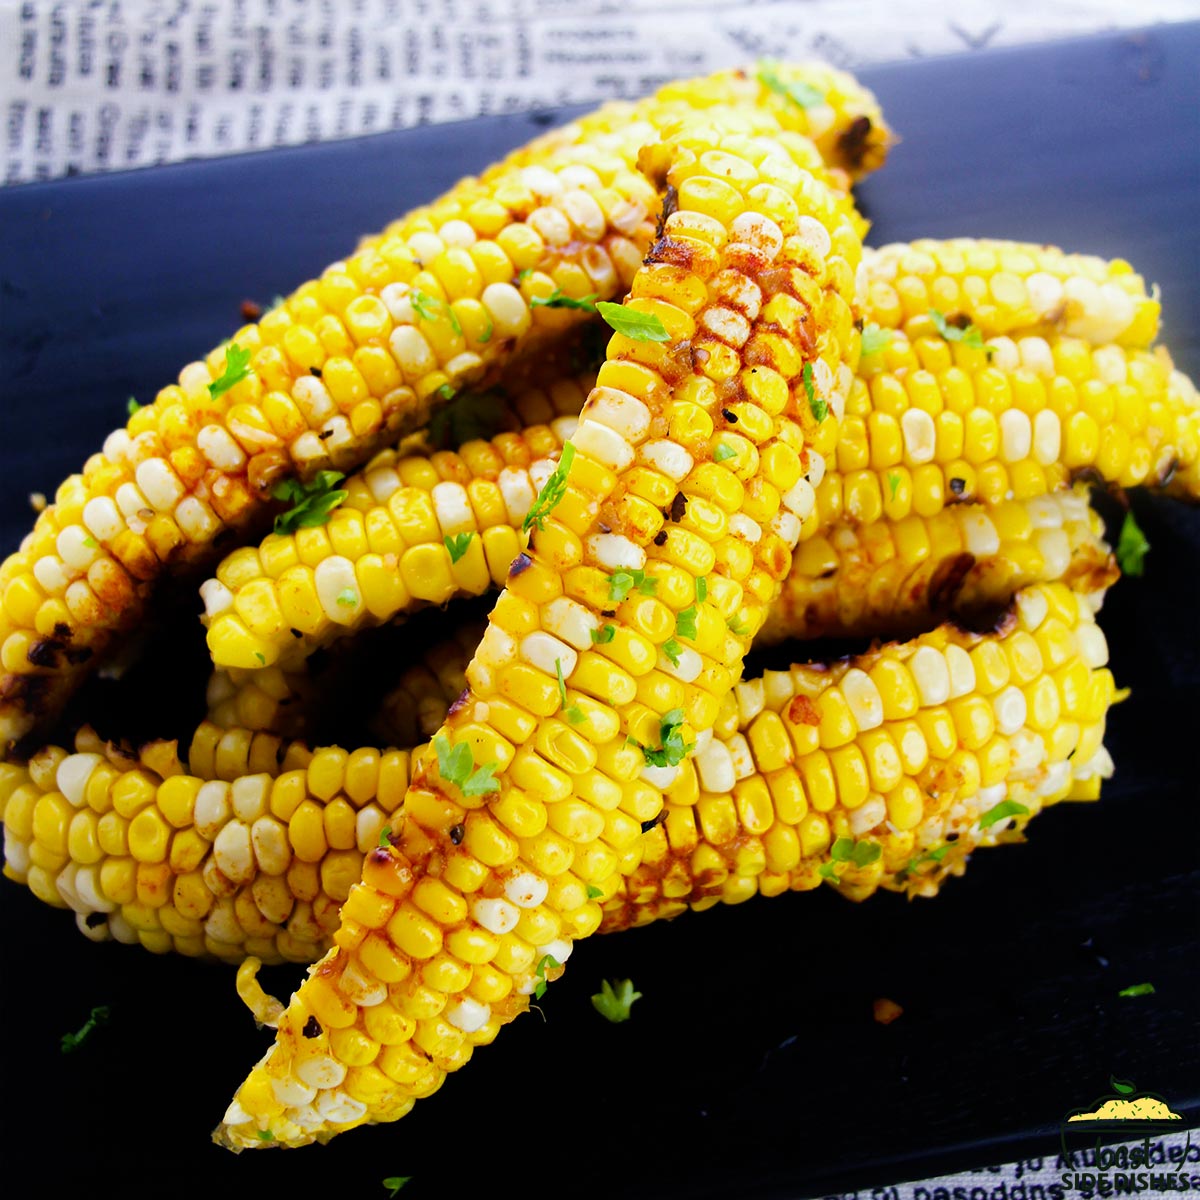 Corn ribs on a black platter